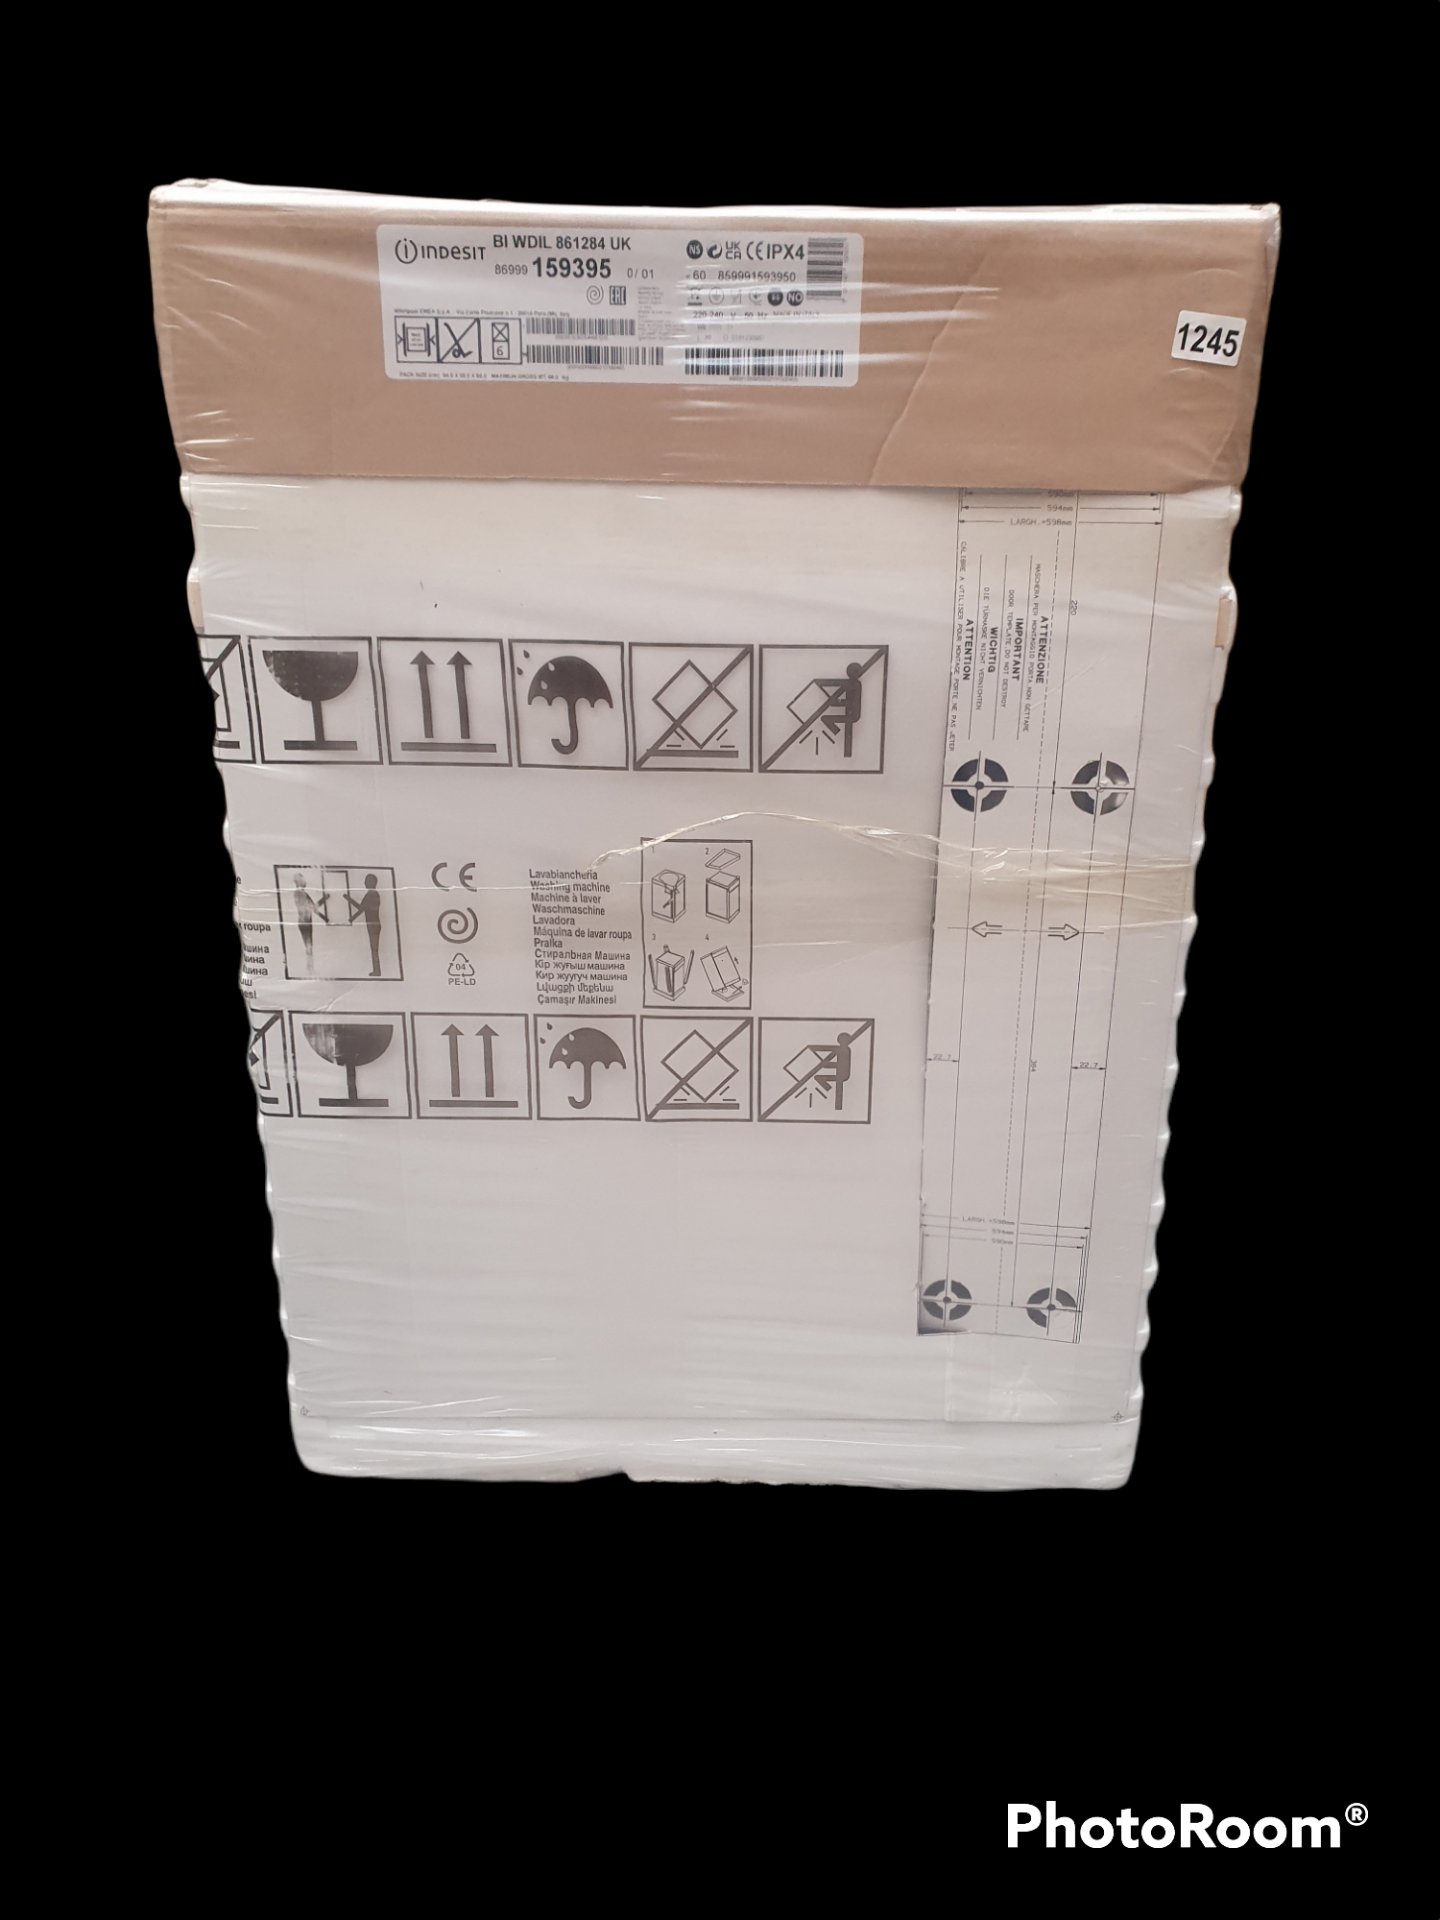 Indesit BIWDIL861284 8kg / 6kg Integrated Washer Dryer RRP £430